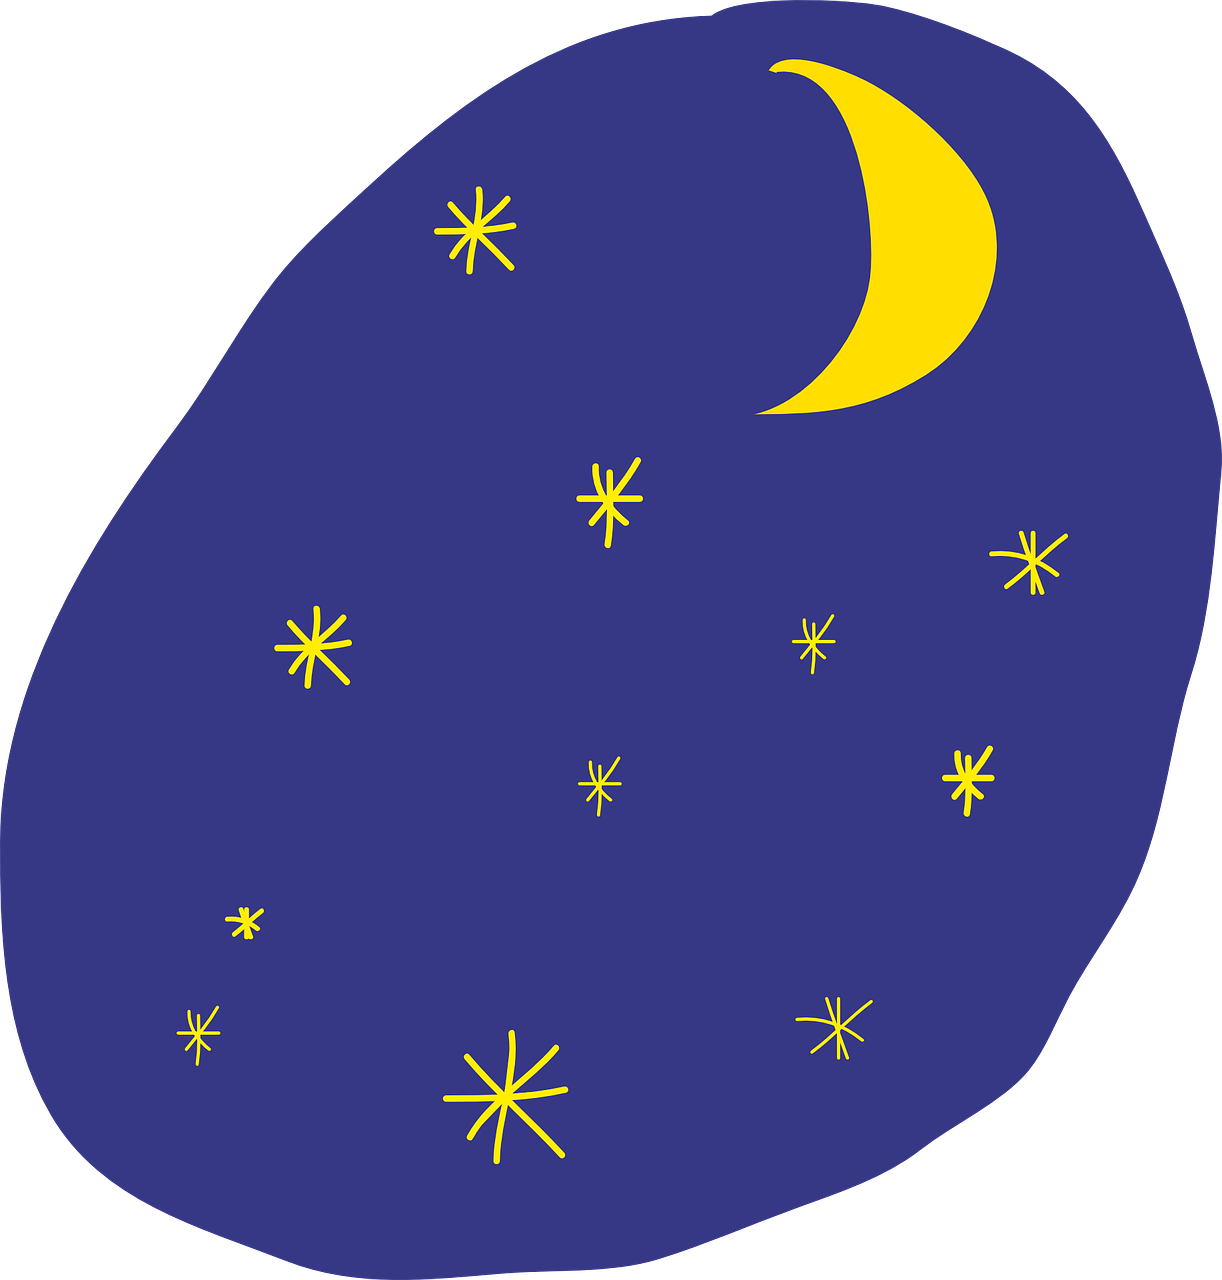 Sky Stars Moon Drawing Png Image - Maan En Sterren Tekening Clipart (1222x1280), Png Download